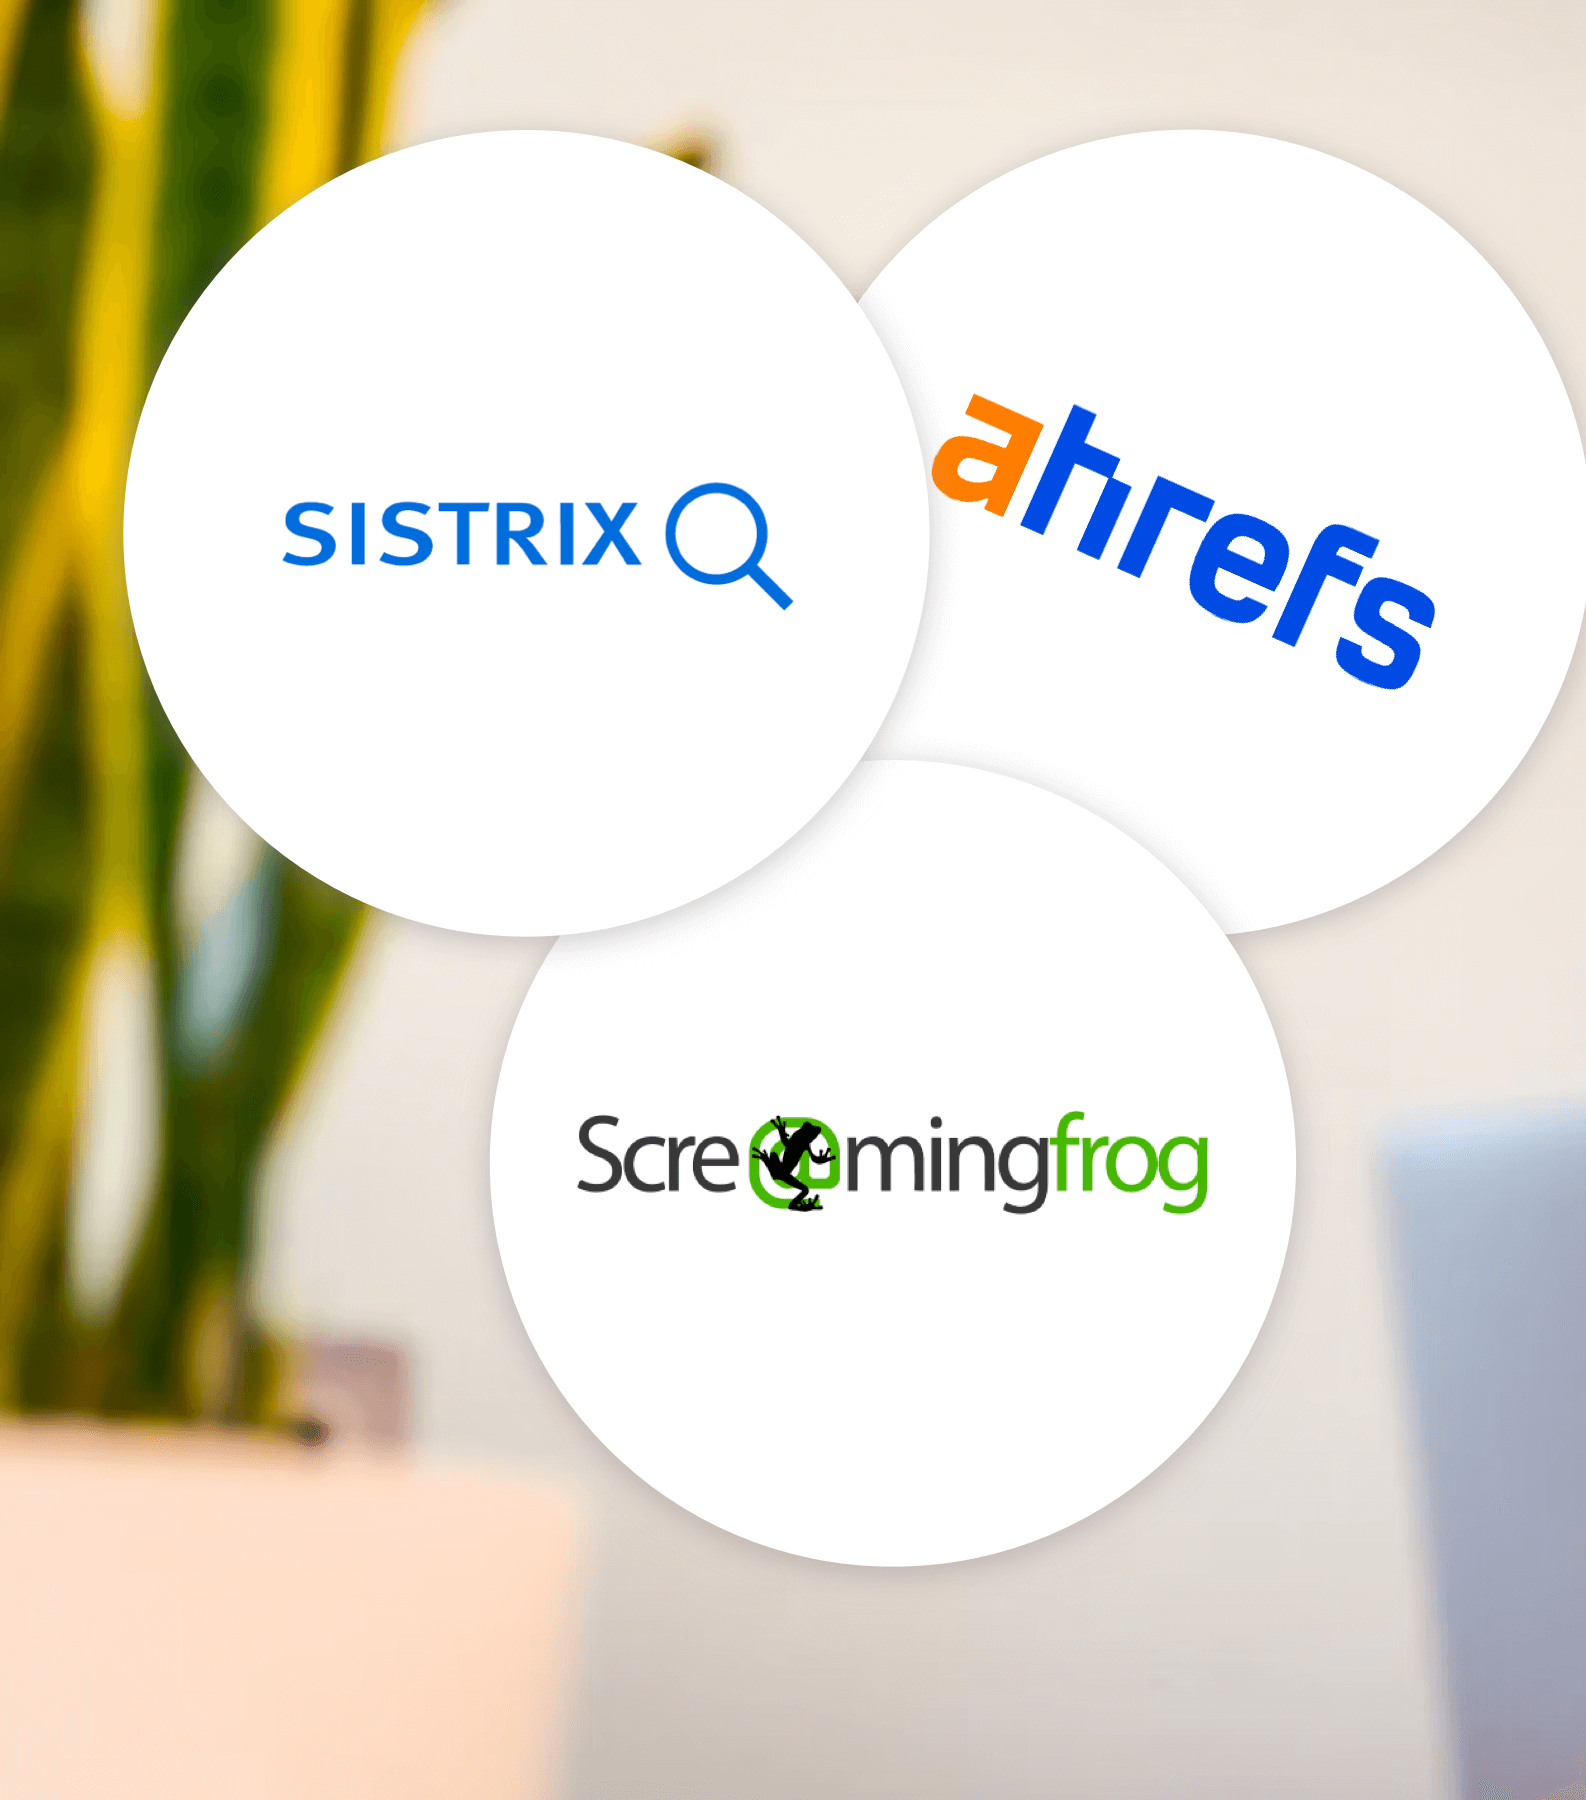 Logos von Sistrix, Screaming Frog und ahrefs